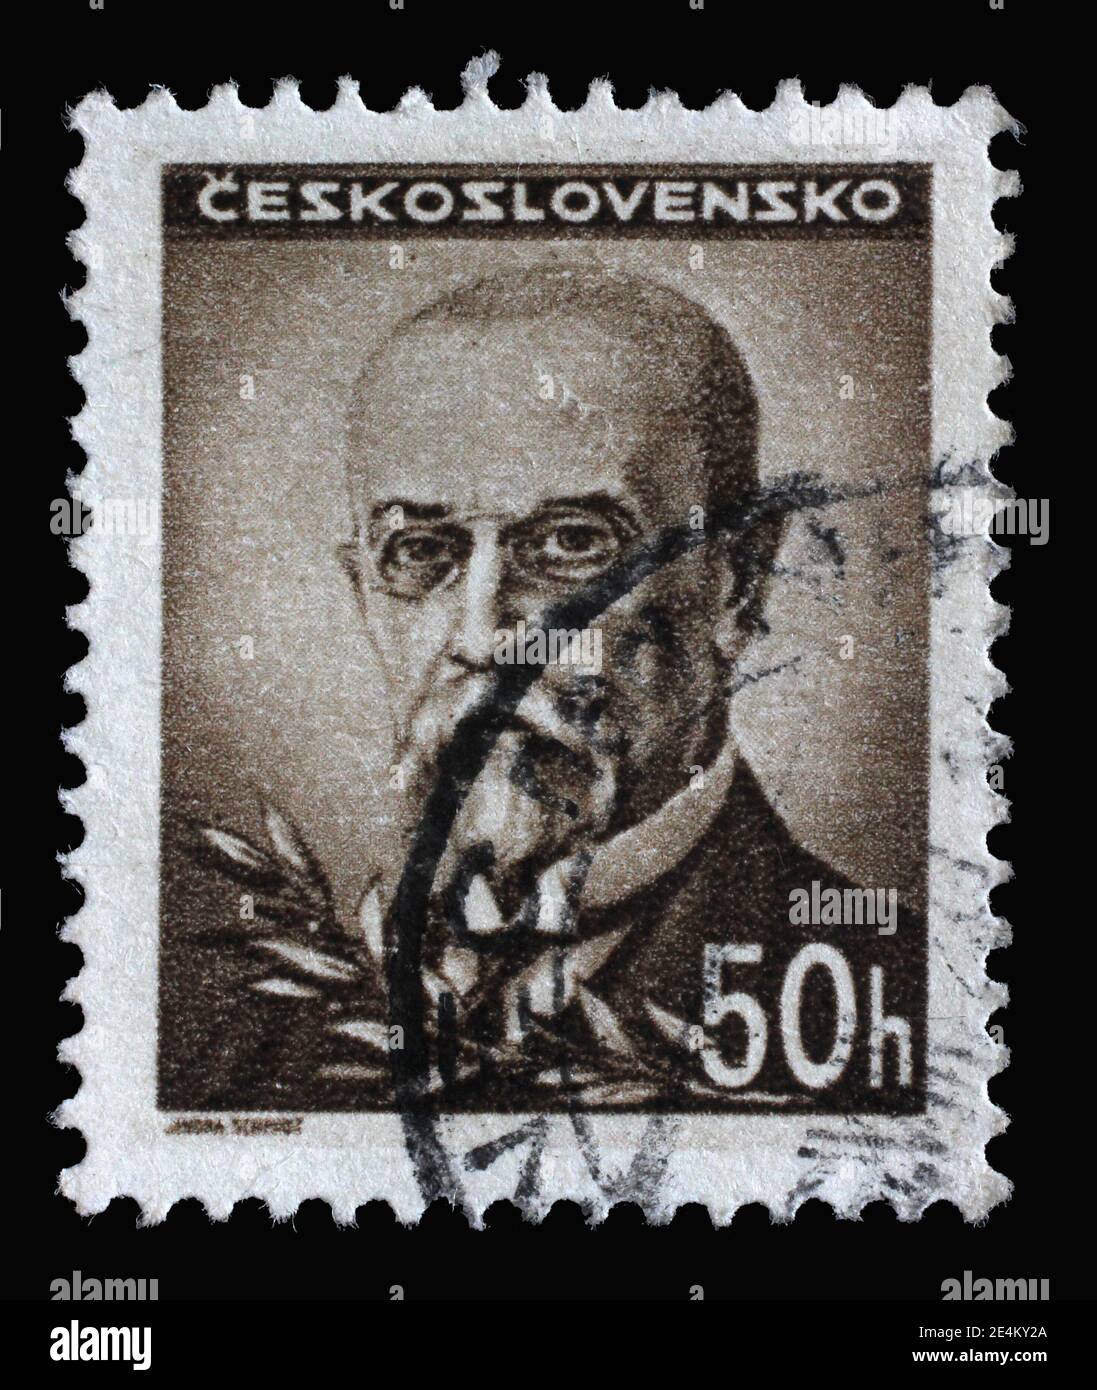 Die in der Tschechoslowakei gedruckte Briefmarke zeigt den ersten Präsidenten der Tschechoslowakei - Thomas Garrigue Masaryk, um 1945 Stockfoto